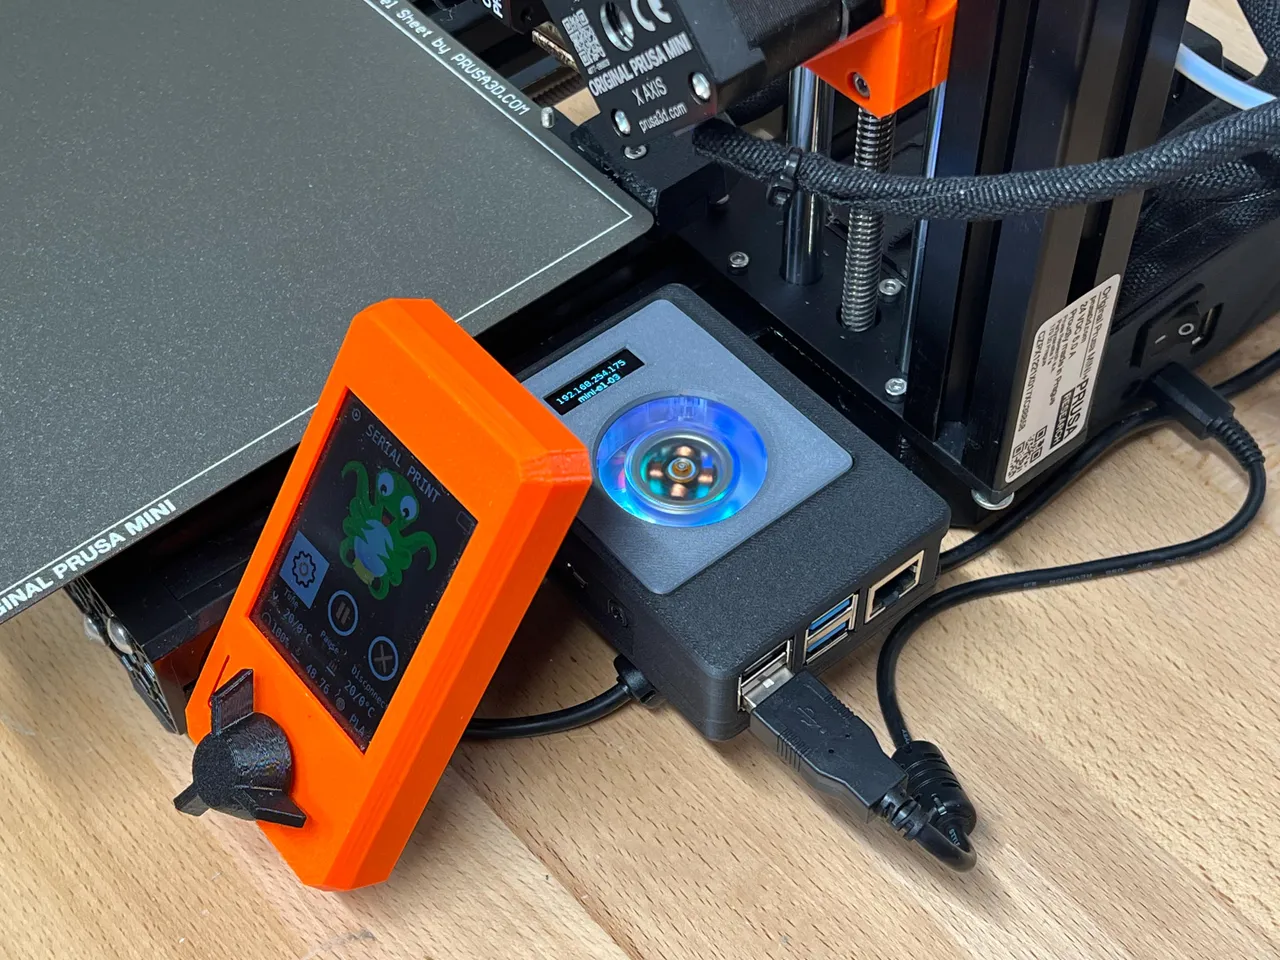 Modular Snap Together Raspberry Pi 2B/3B/3B+/4 Case w/ OLED & Fan